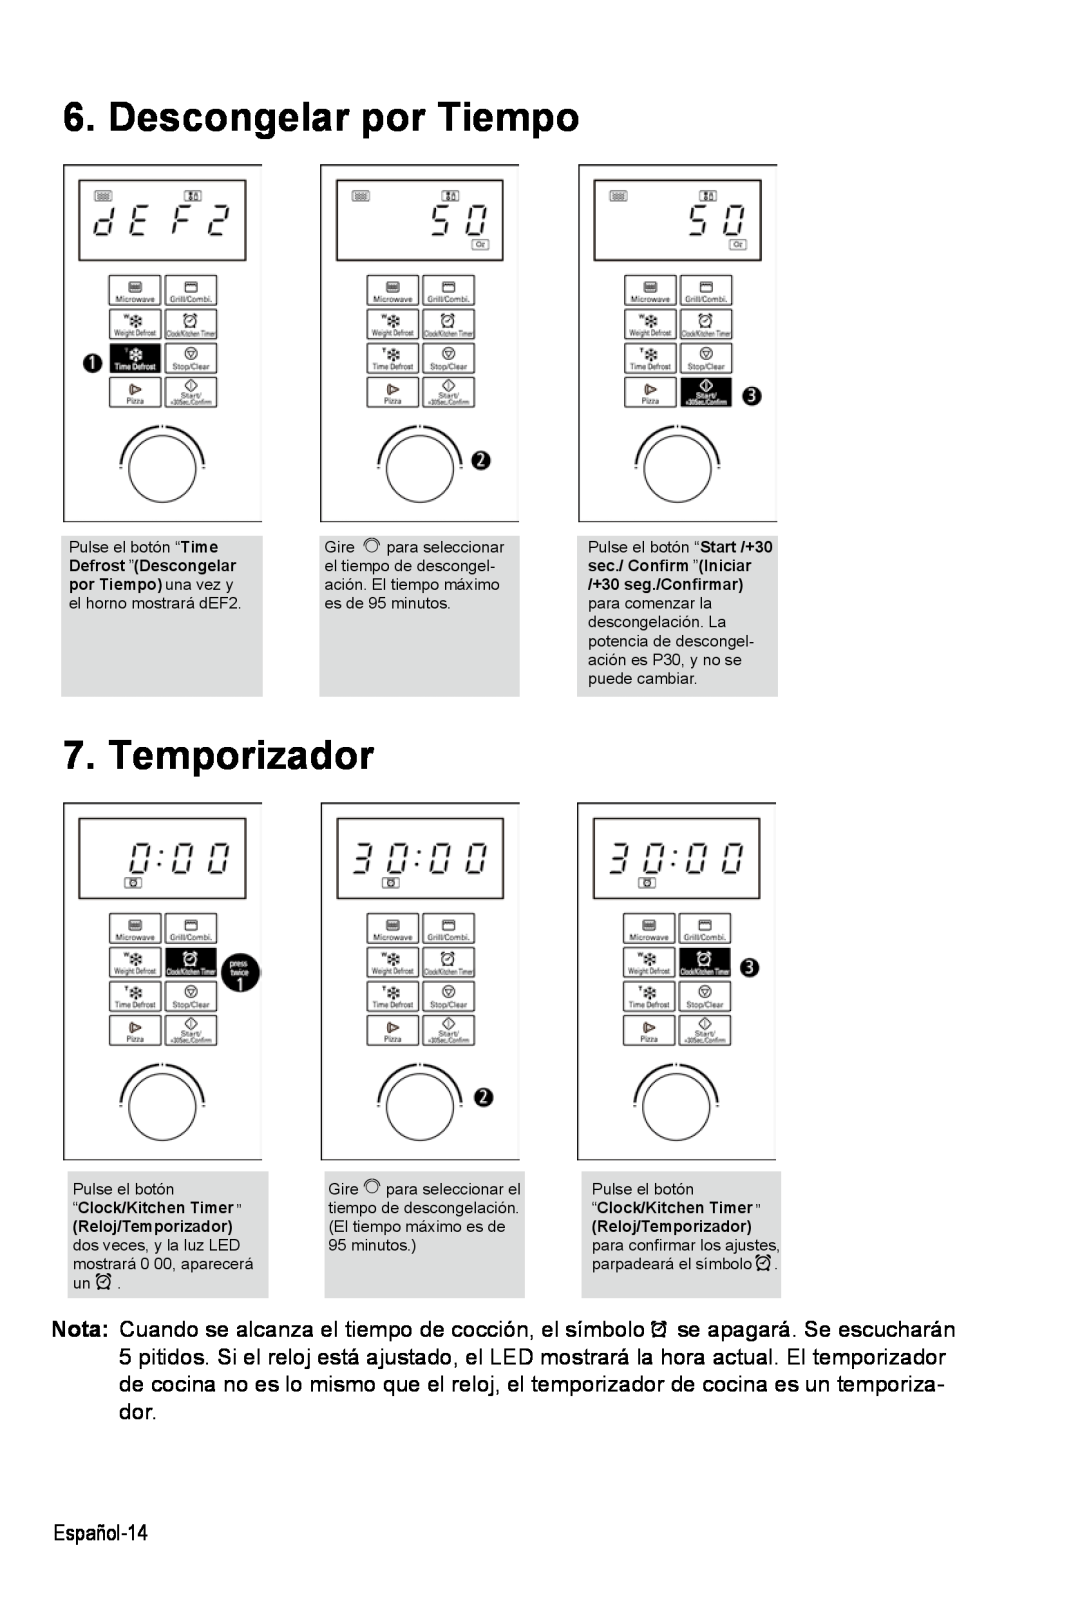 West Bend AG028PLV manual Descongelar por Tiempo, “Clock/Kitchen Timer ”, Reloj/Temporizador 